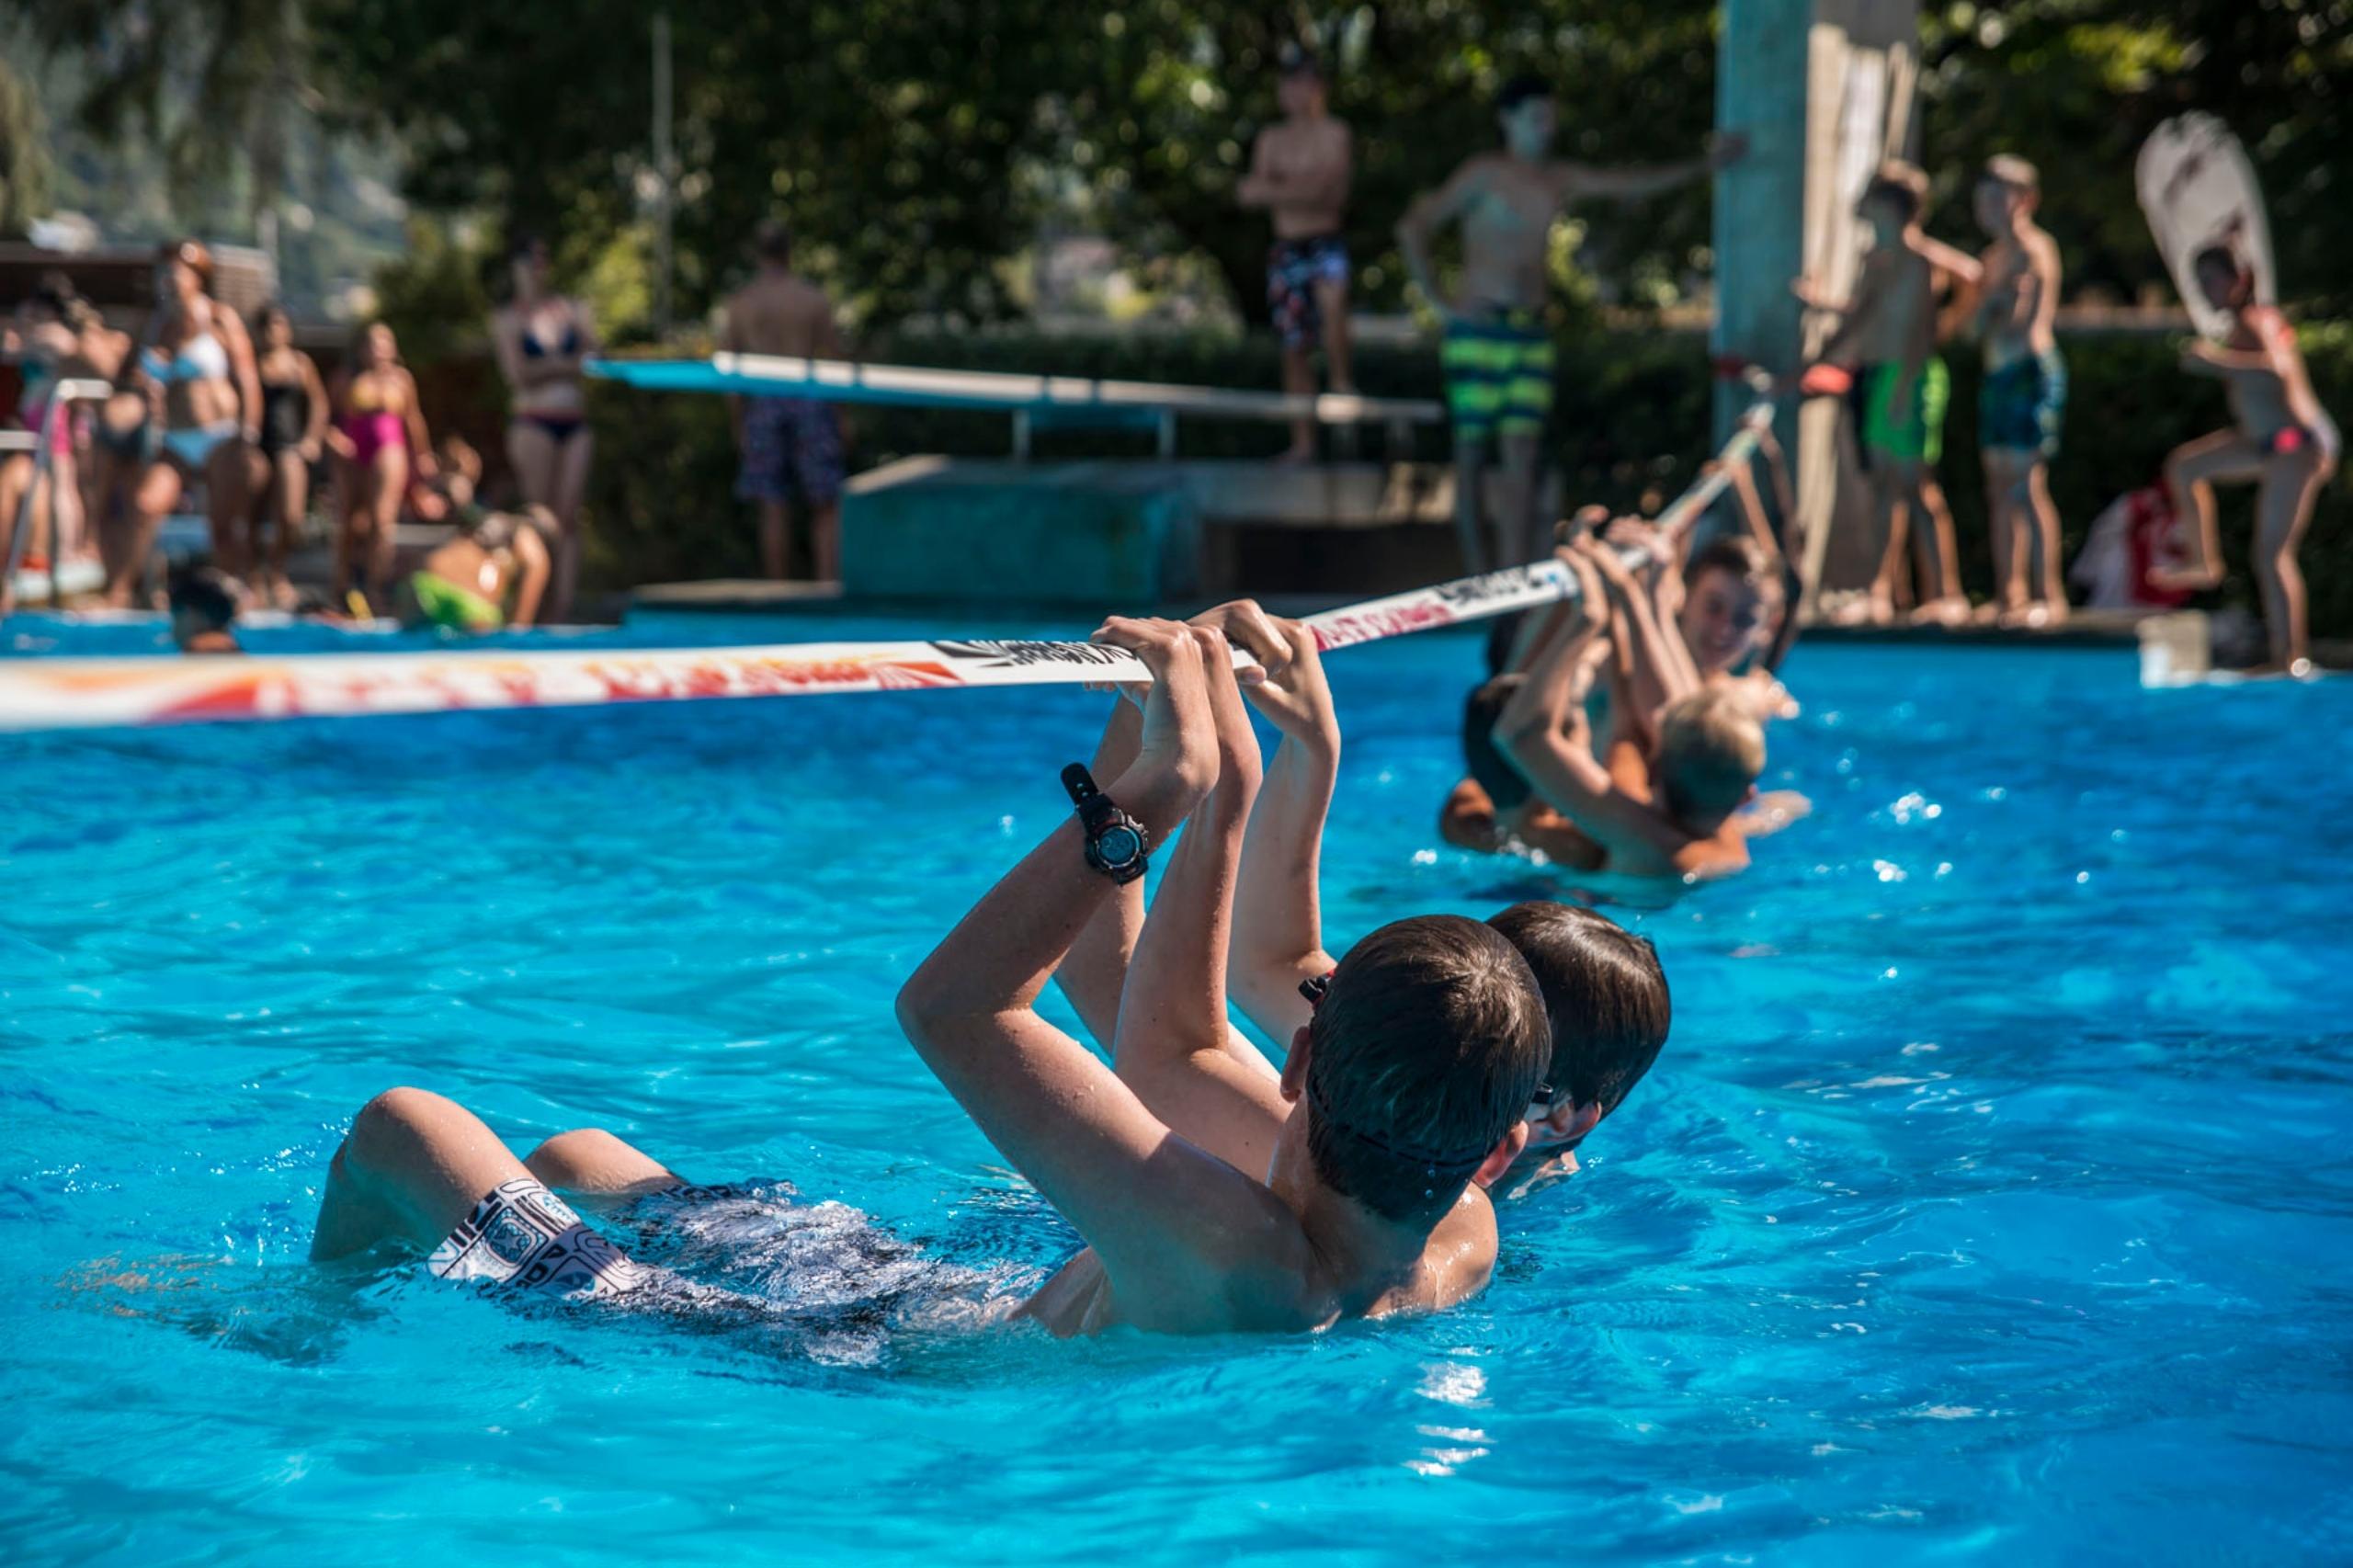  La piscine publique de Viège fait partie du camping. Plaisir et action sont garantis.